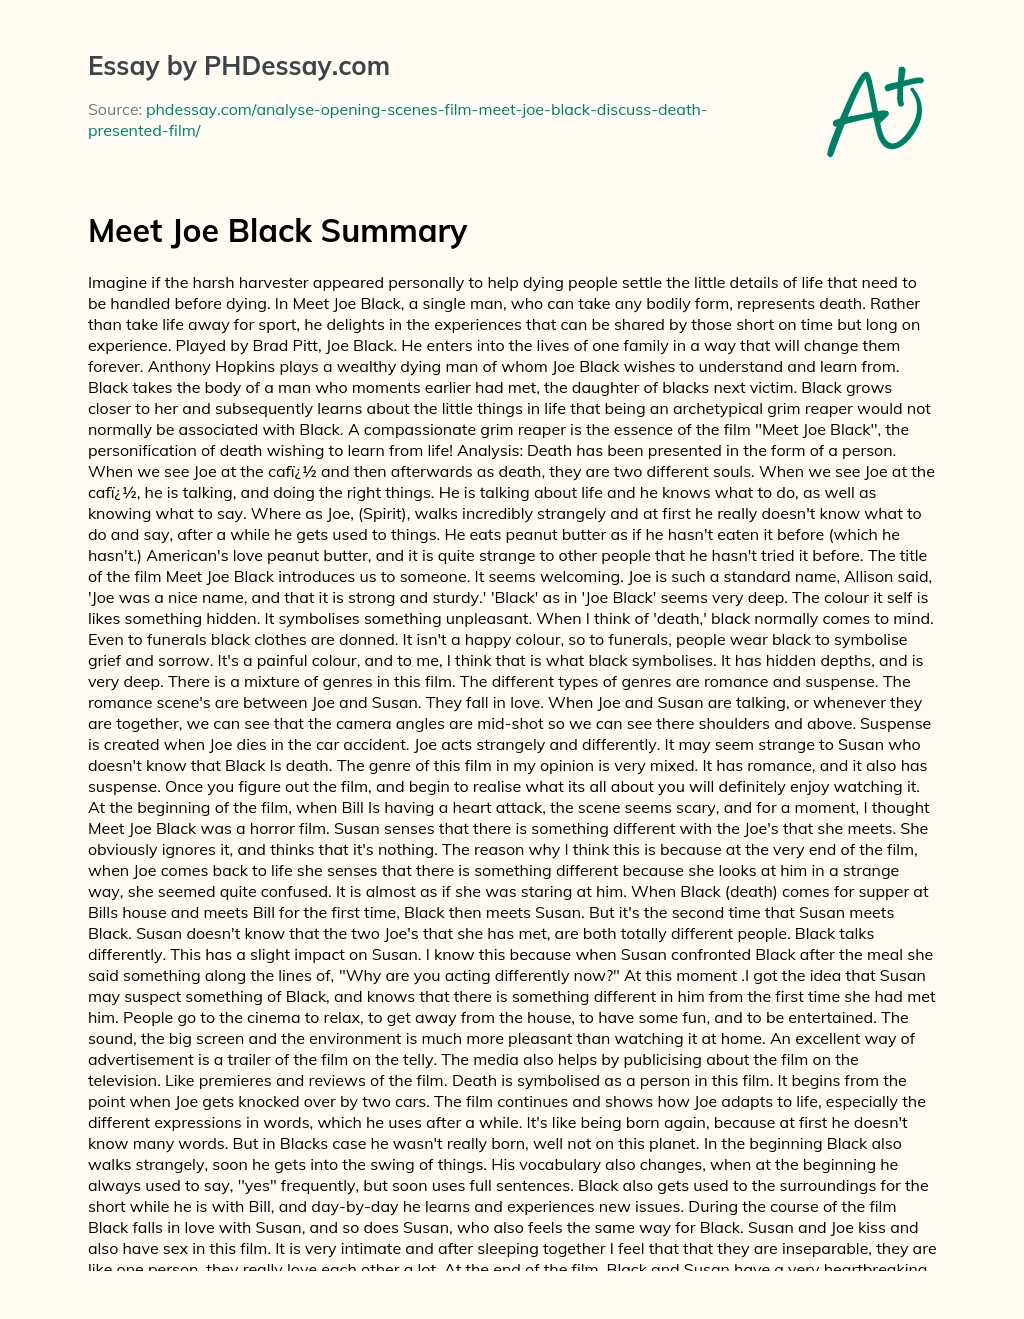 Meet Joe Black Summary essay